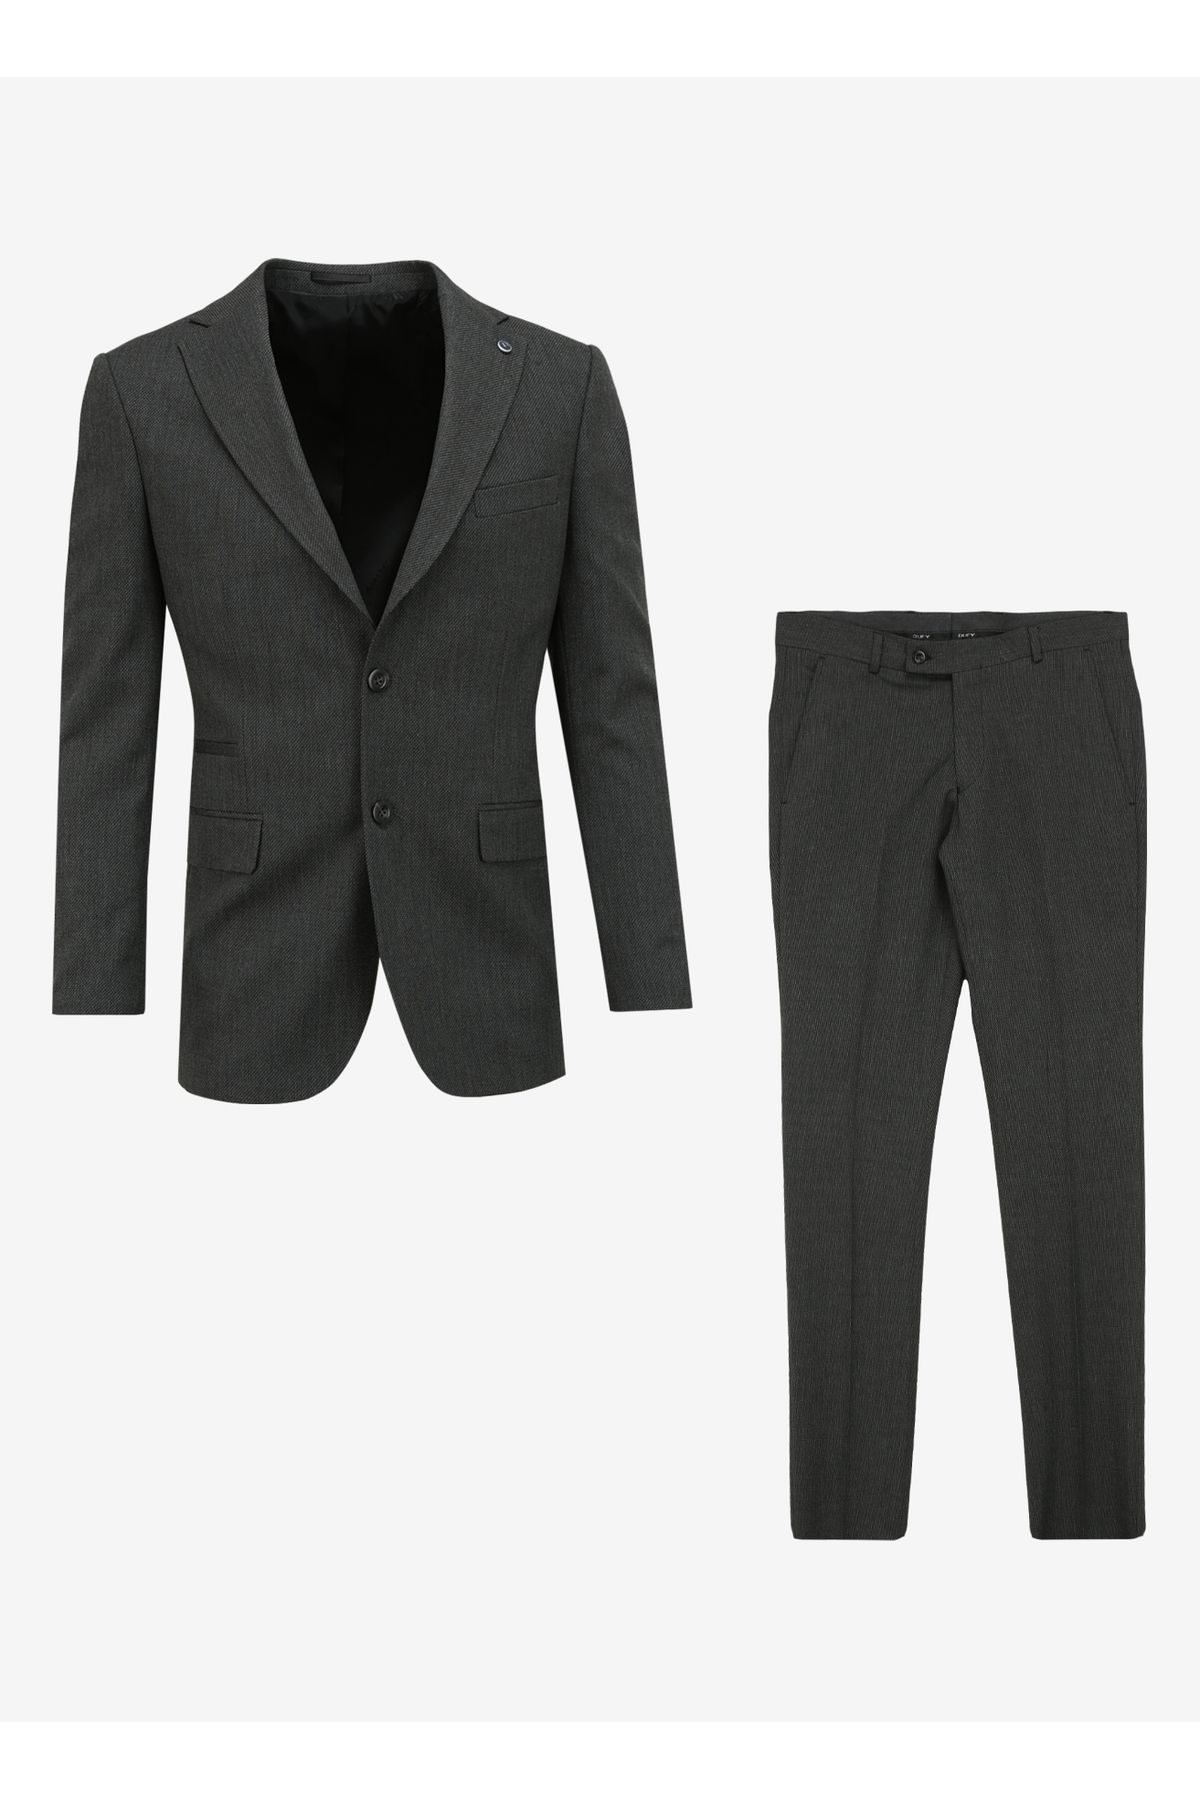 Dufy Standart Bel Slim Fit Antrasit Erkek Takım Elbise DU1234204002